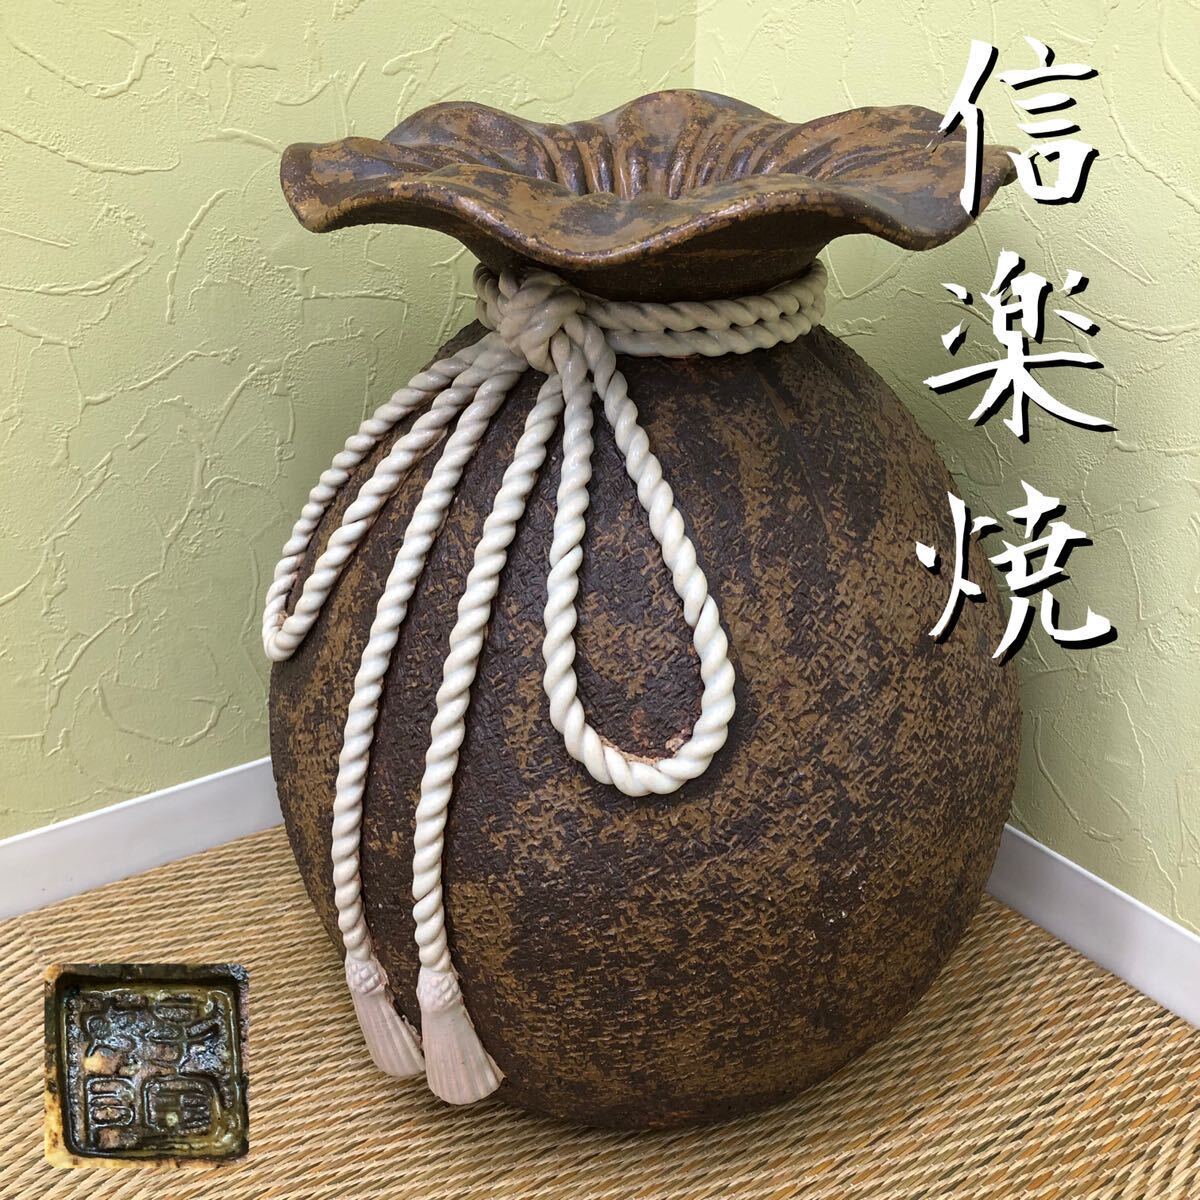 H# Shigaraki . сумка type .tsubo.. ваза ваза для цветов цветок основа стойка для зонтов керамика антиквариат товар украшение произведение искусства . пакет прекрасный криптомерия обжиг в печи старый изобразительное искусство интерьер 